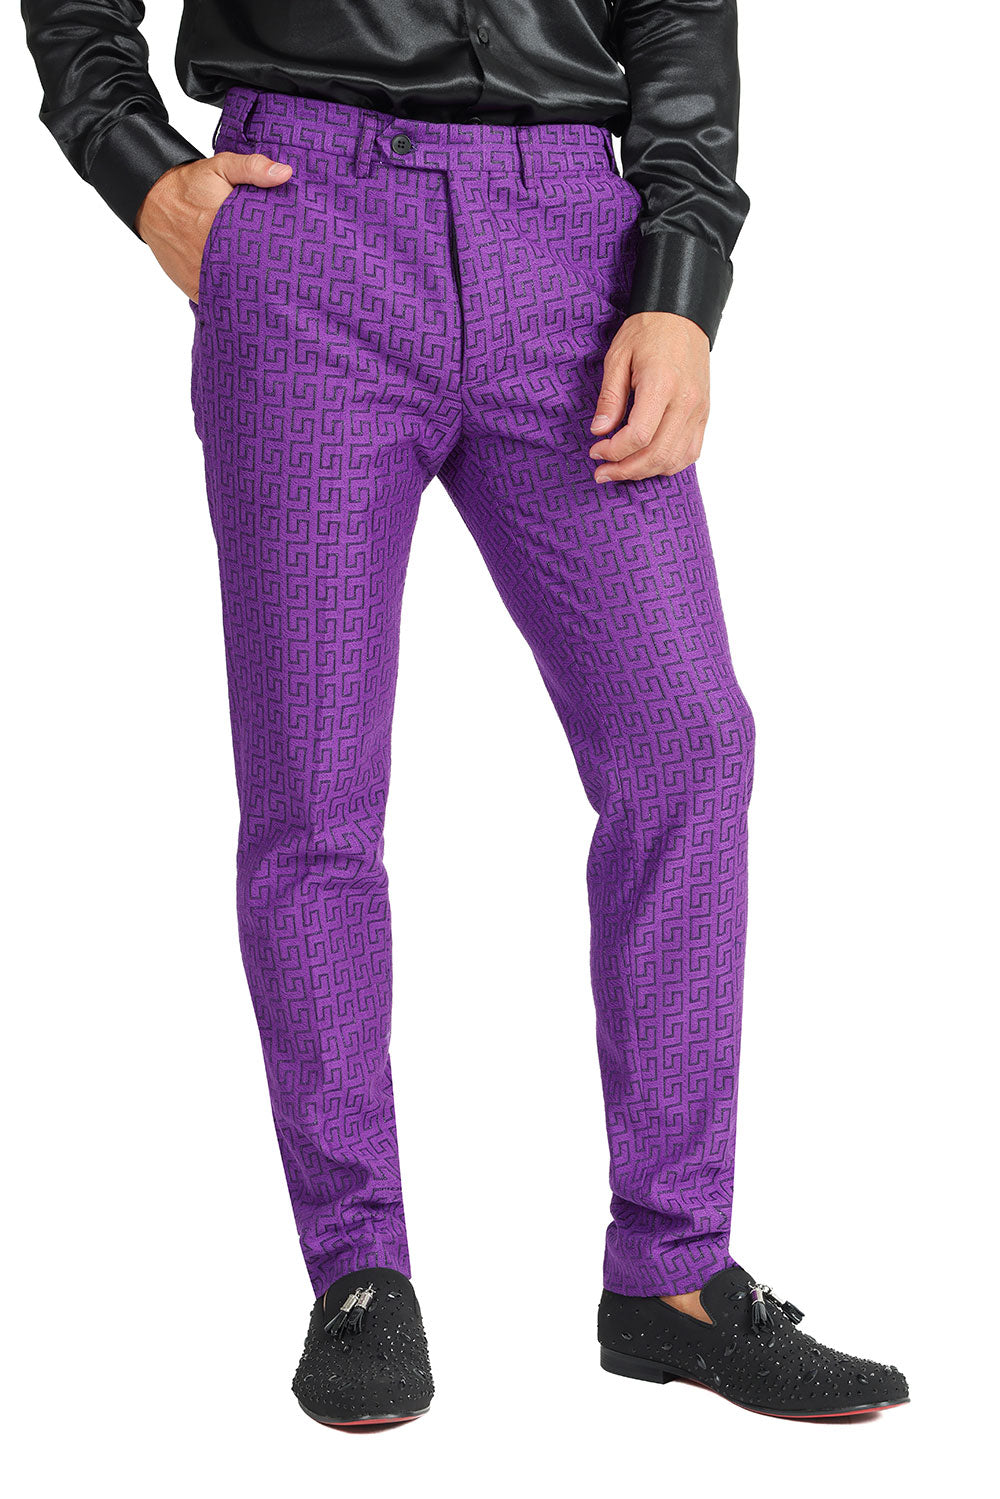 Barabas Men's Greek Pattern Baroque Luxury Pants 2CP3087 Purple Black